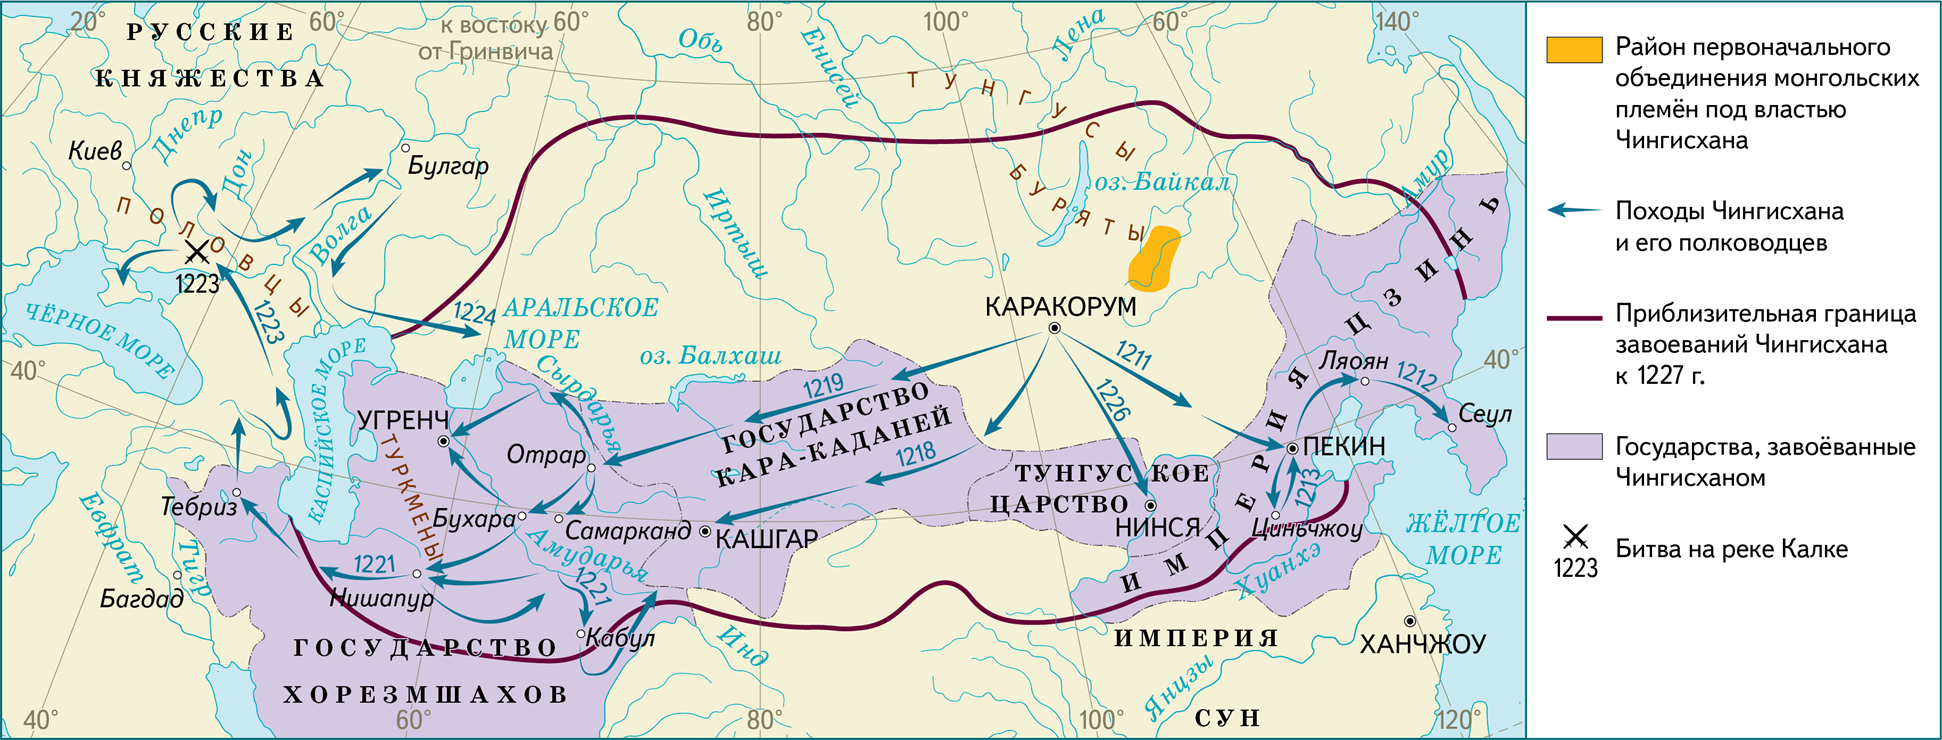 Власть в великом хане. Монгольская Империя 1227. Завоевания Чингисхана карта. Карта завоеваний Монголии. 1206-1227 Правление Чингисхана.